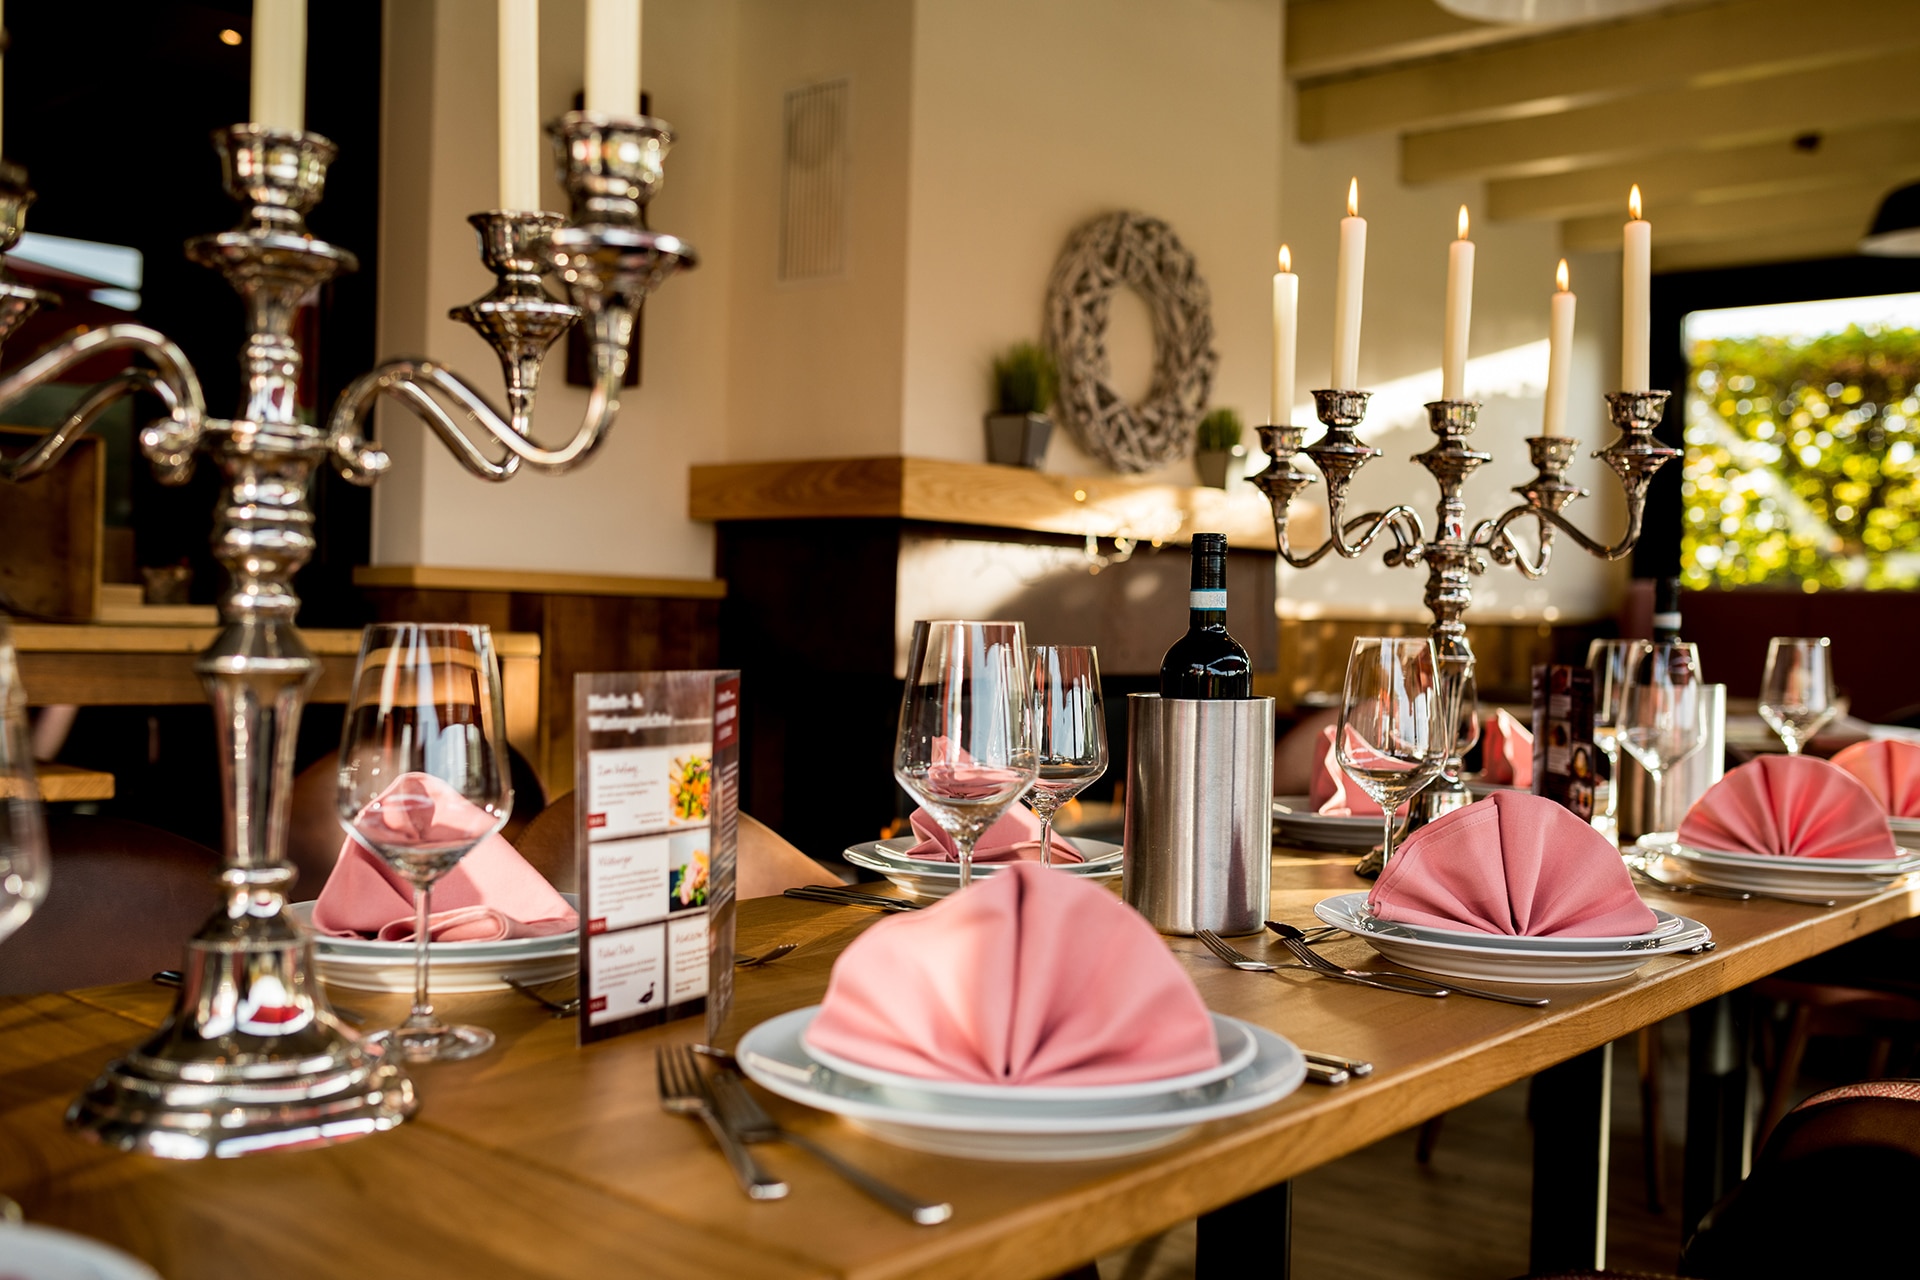 Elegante Tischdekoration in einem gehobenen Restaurant. Im Vordergrund stehen glänzende silberne Kerzenleuchter mit brennenden weißen Kerzen. Die Tische sind mit Weingläsern, gefalteten rosafarbenen Servietten auf weißen Tellern und Besteck sorgfältig gedeckt. Eine Flasche Wein und ein Weinbehälter stehen bereit. Im Hintergrund ist ein weiterer dekorativer Kranz an der Wand zu erkennen, der das stilvolle Ambiente unterstreicht.